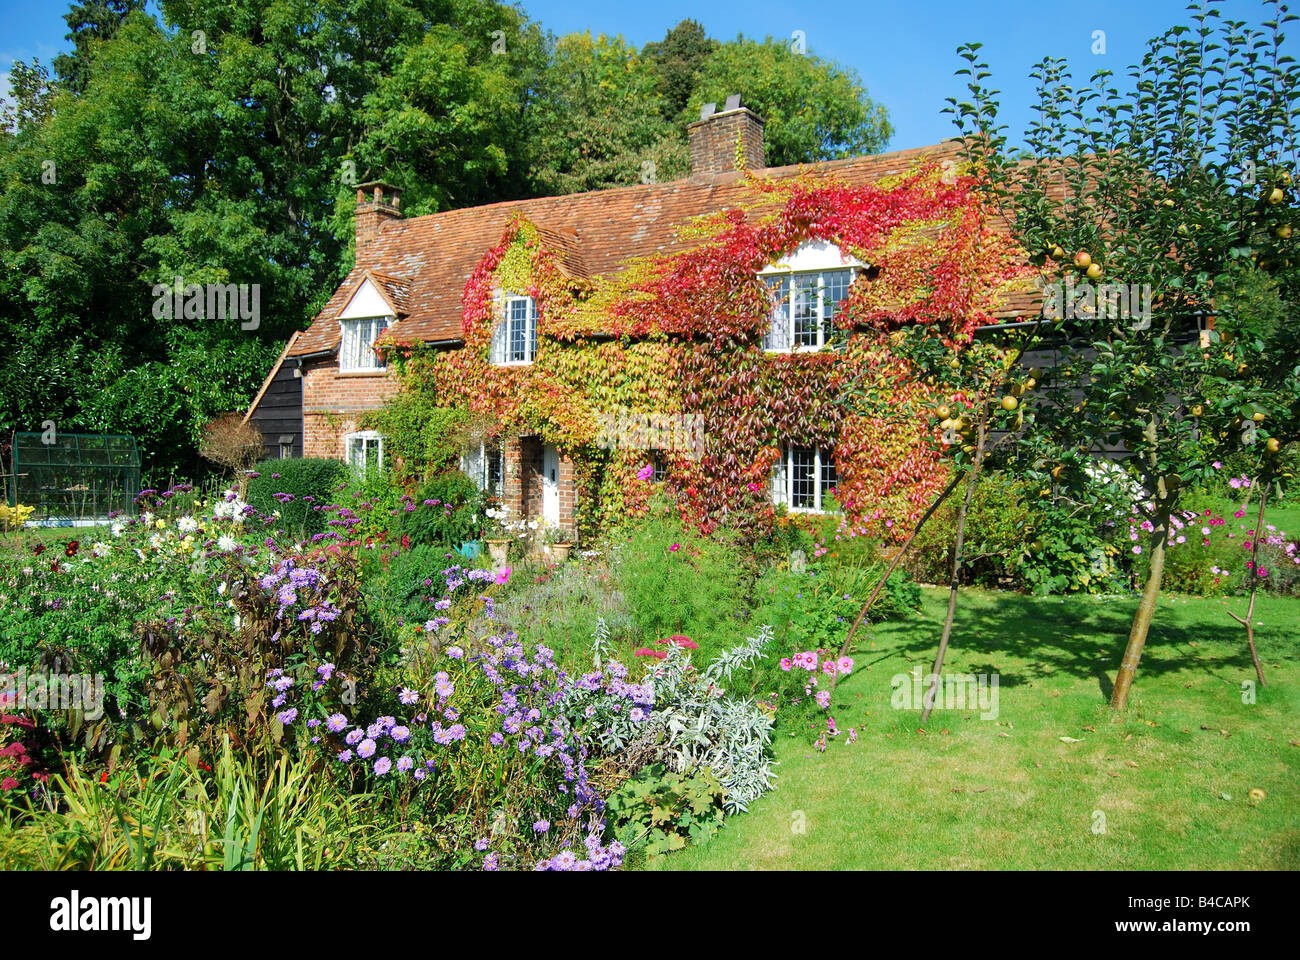 Chalet et jardin, période Chartridge, Buckinghamshire, Angleterre, Royaume-Uni Banque D'Images